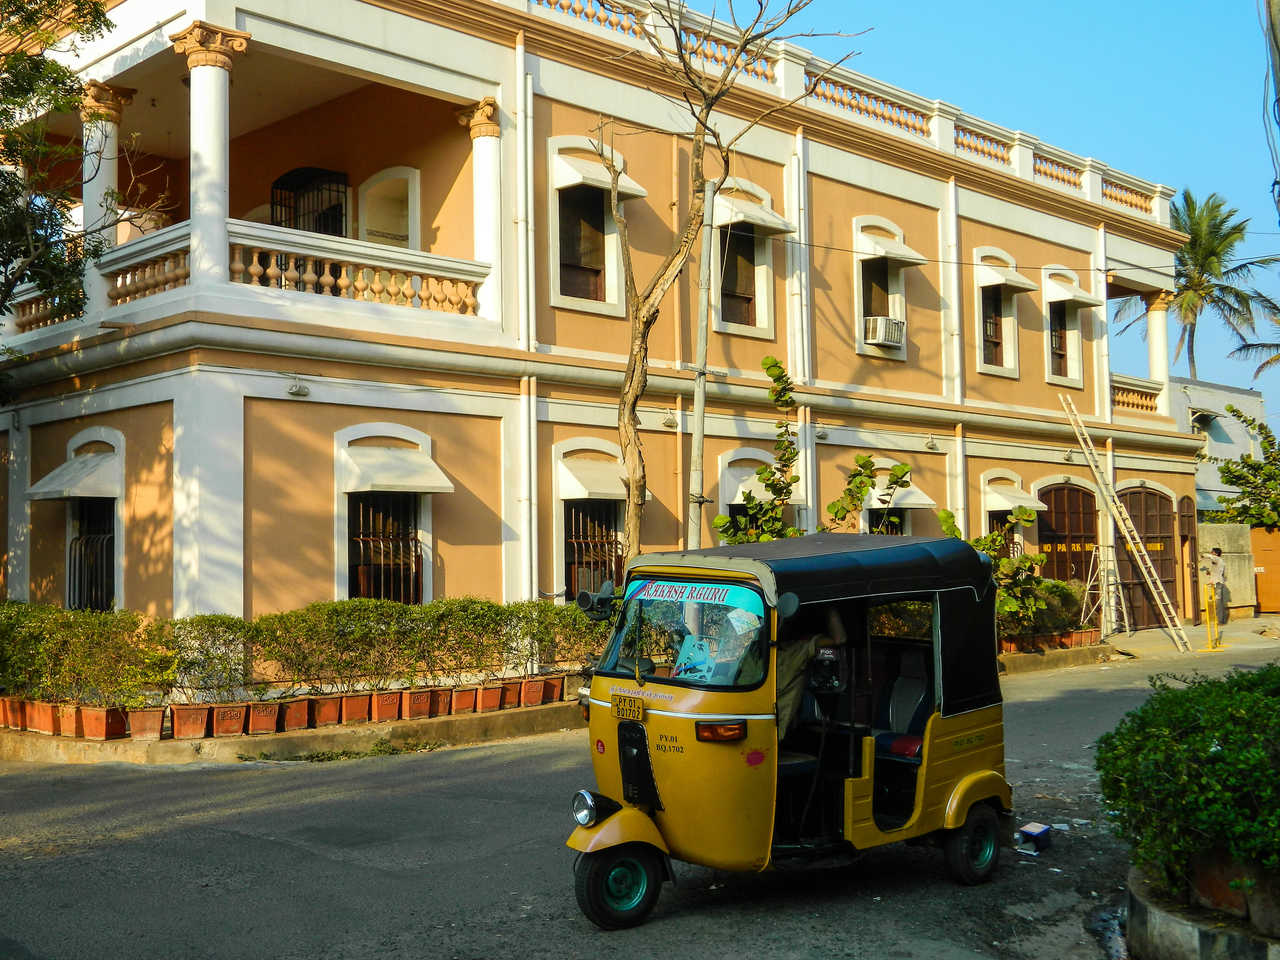 Autorickshaw dans le quartier colonial de Pondichery